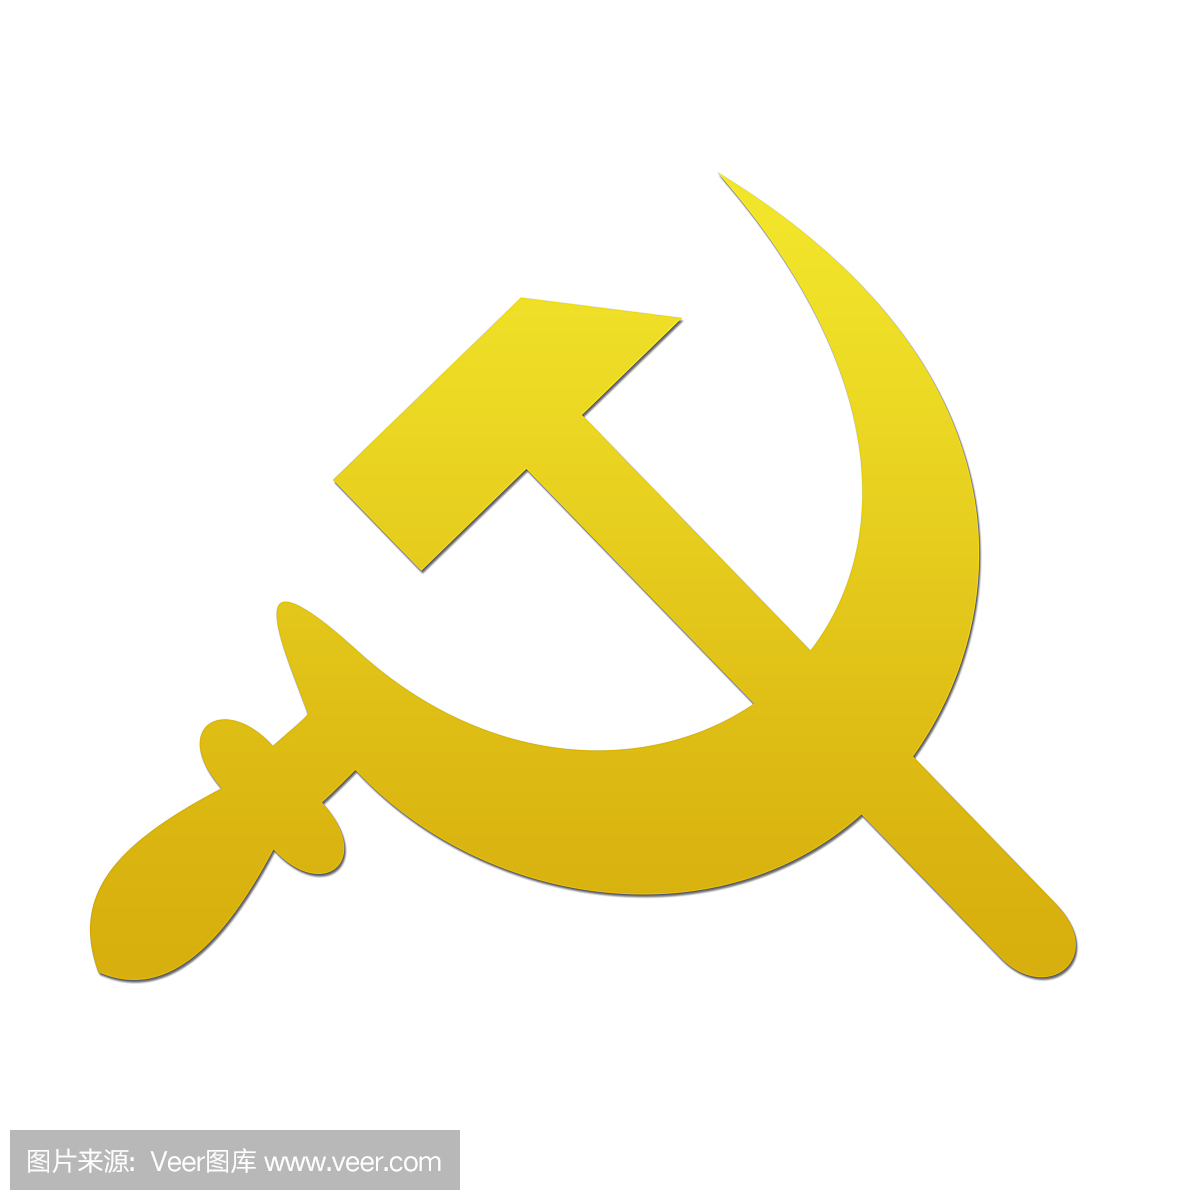 共产主义象征。